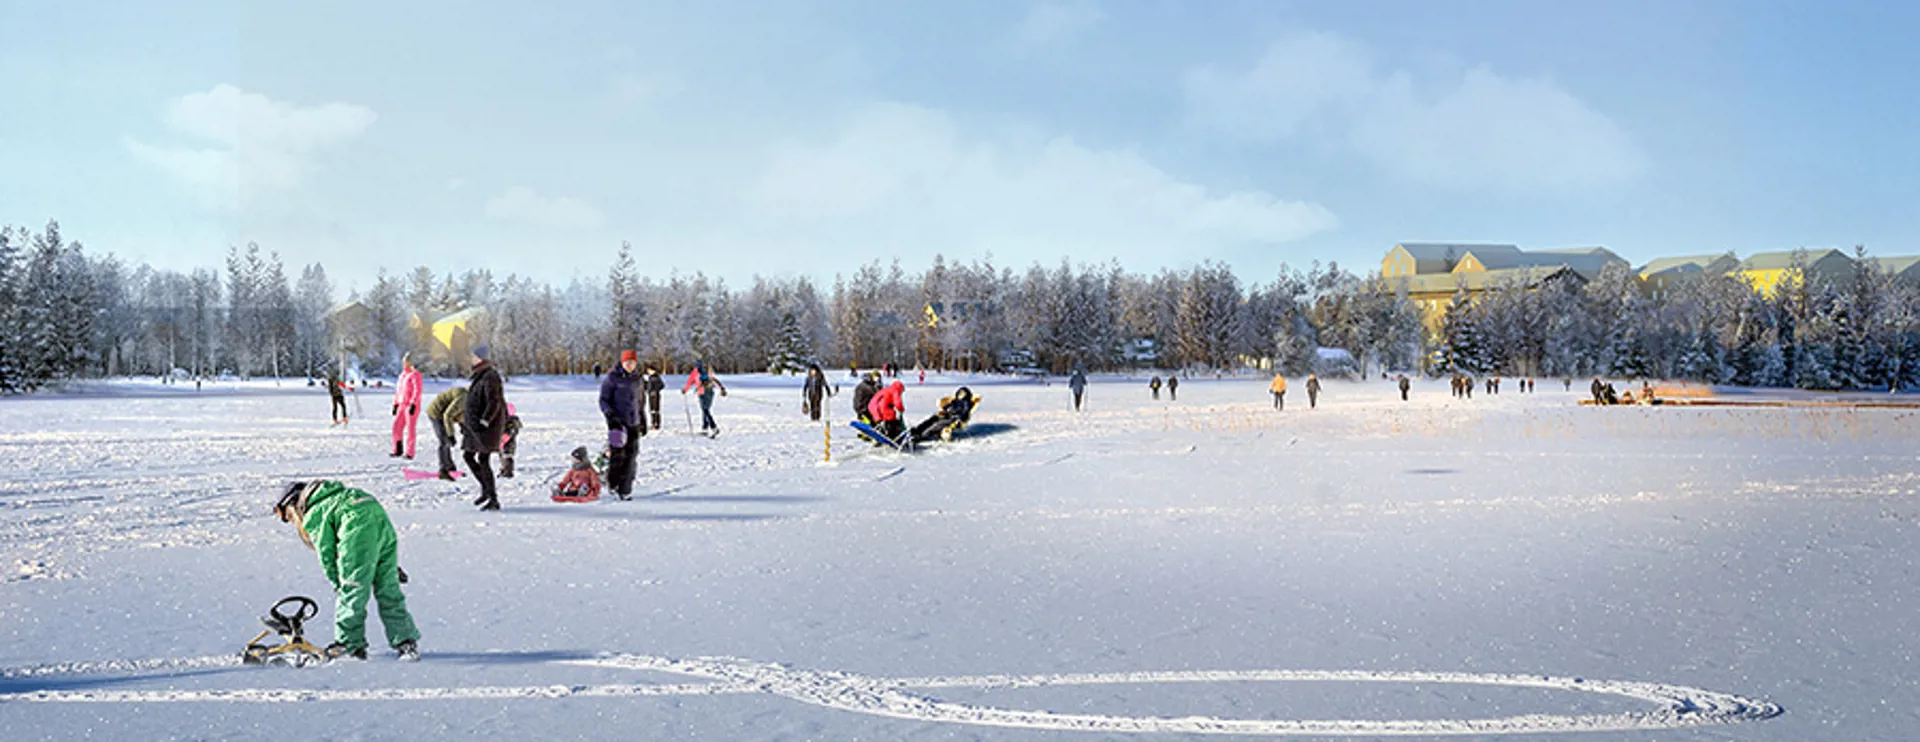 Barn och vuxna leker på sjön i snön. Hus skymtas bakom träden.